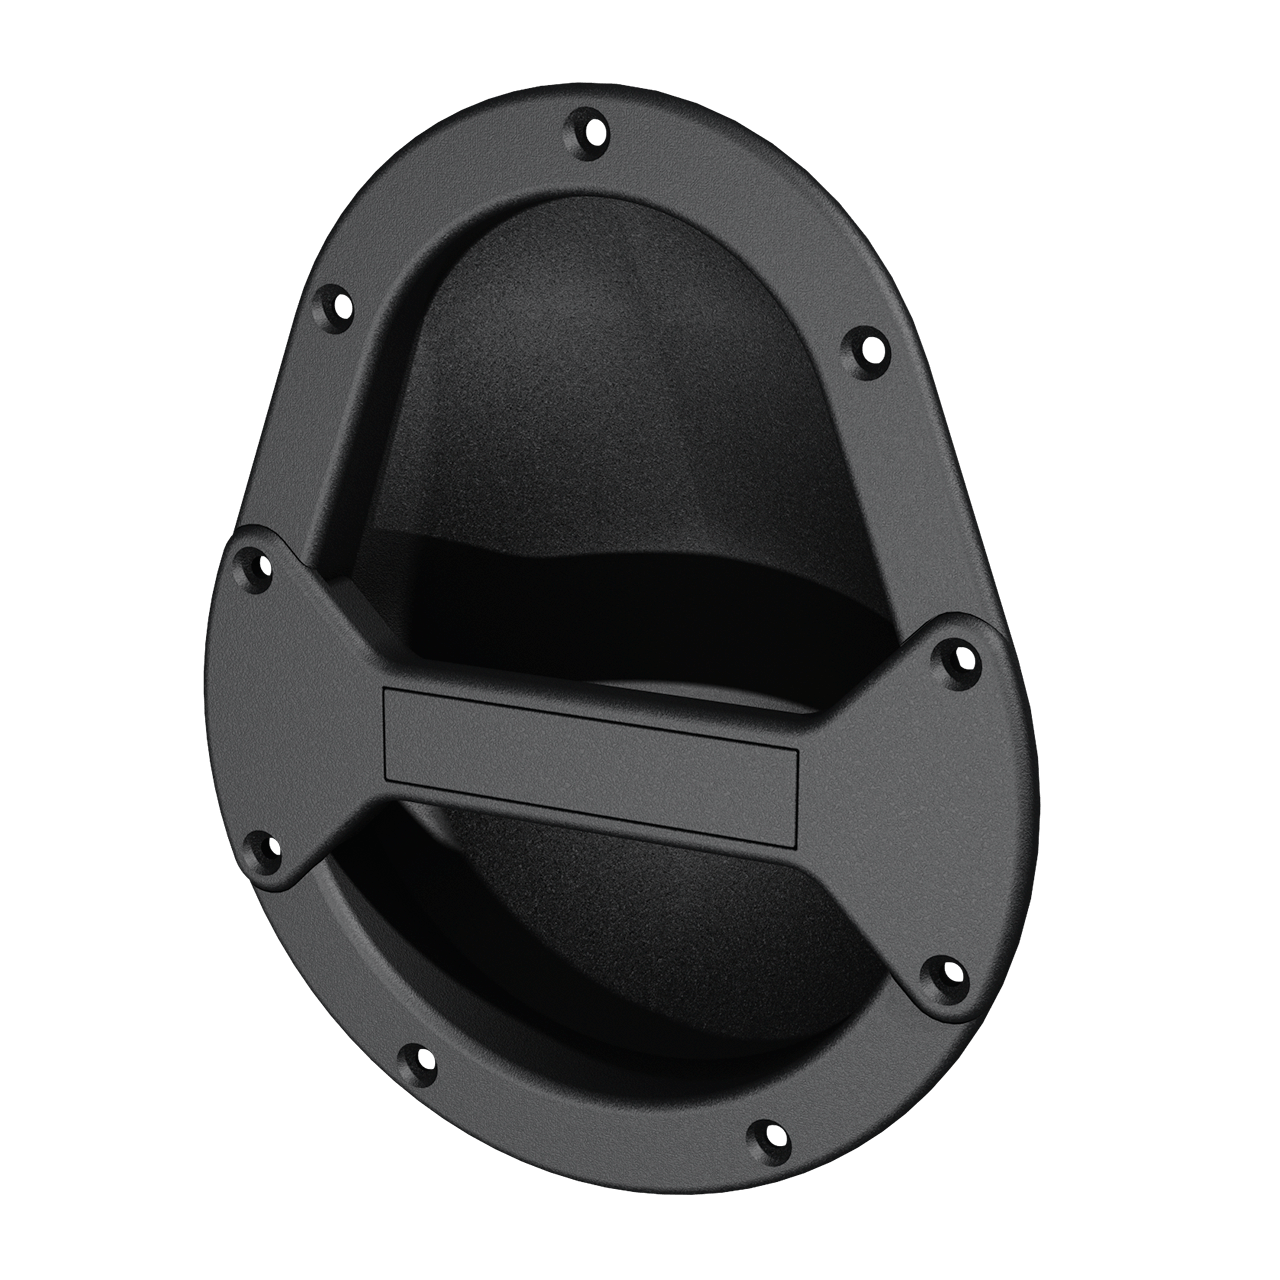 Tear-dropped shaped speaker handle